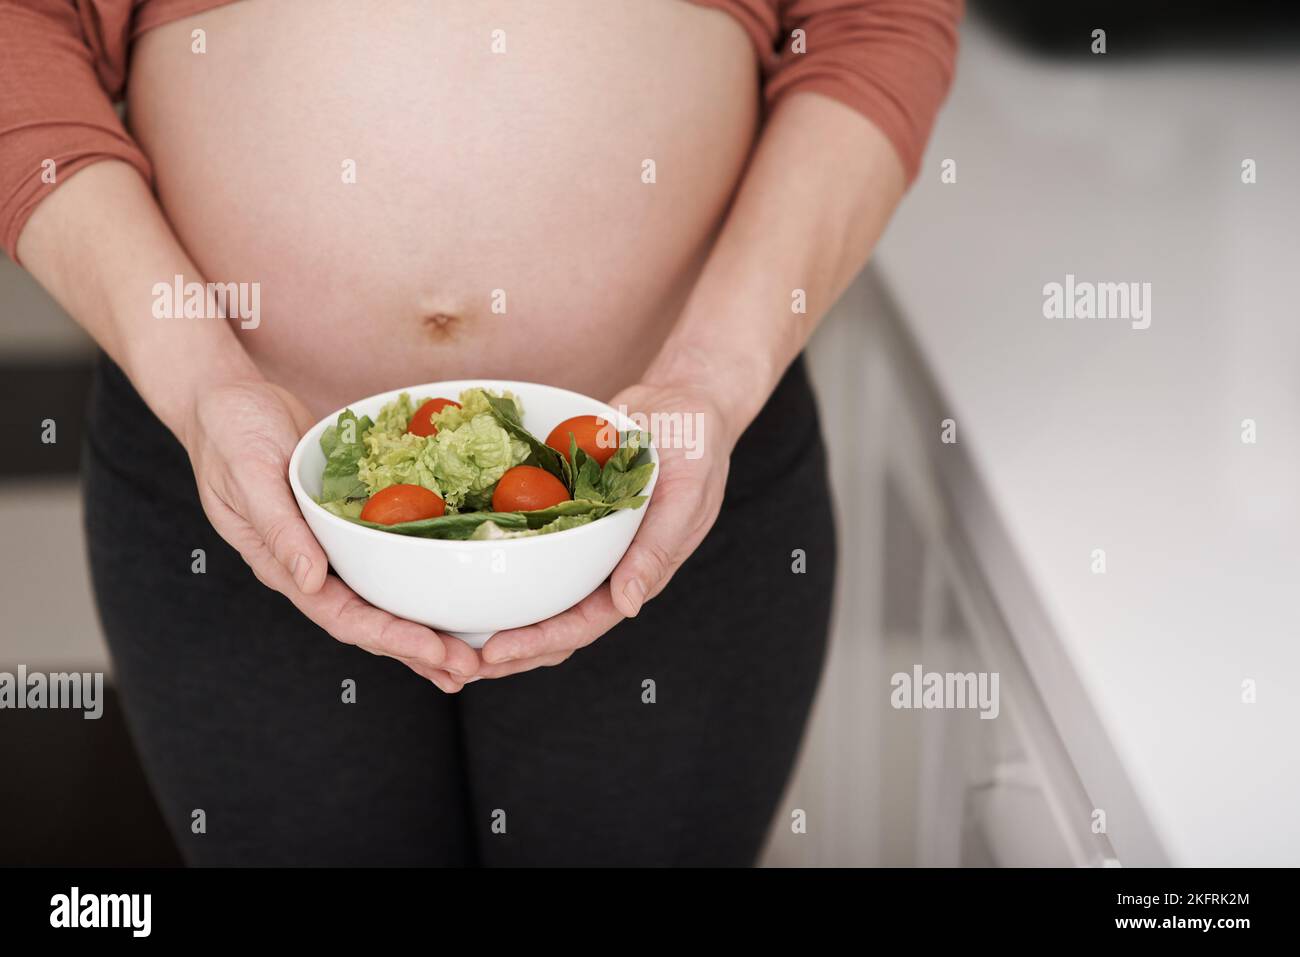 Le meilleur choix pour la femme enceinte. Une jeune femme enceinte tenant une salade dans la cuisine. Banque D'Images